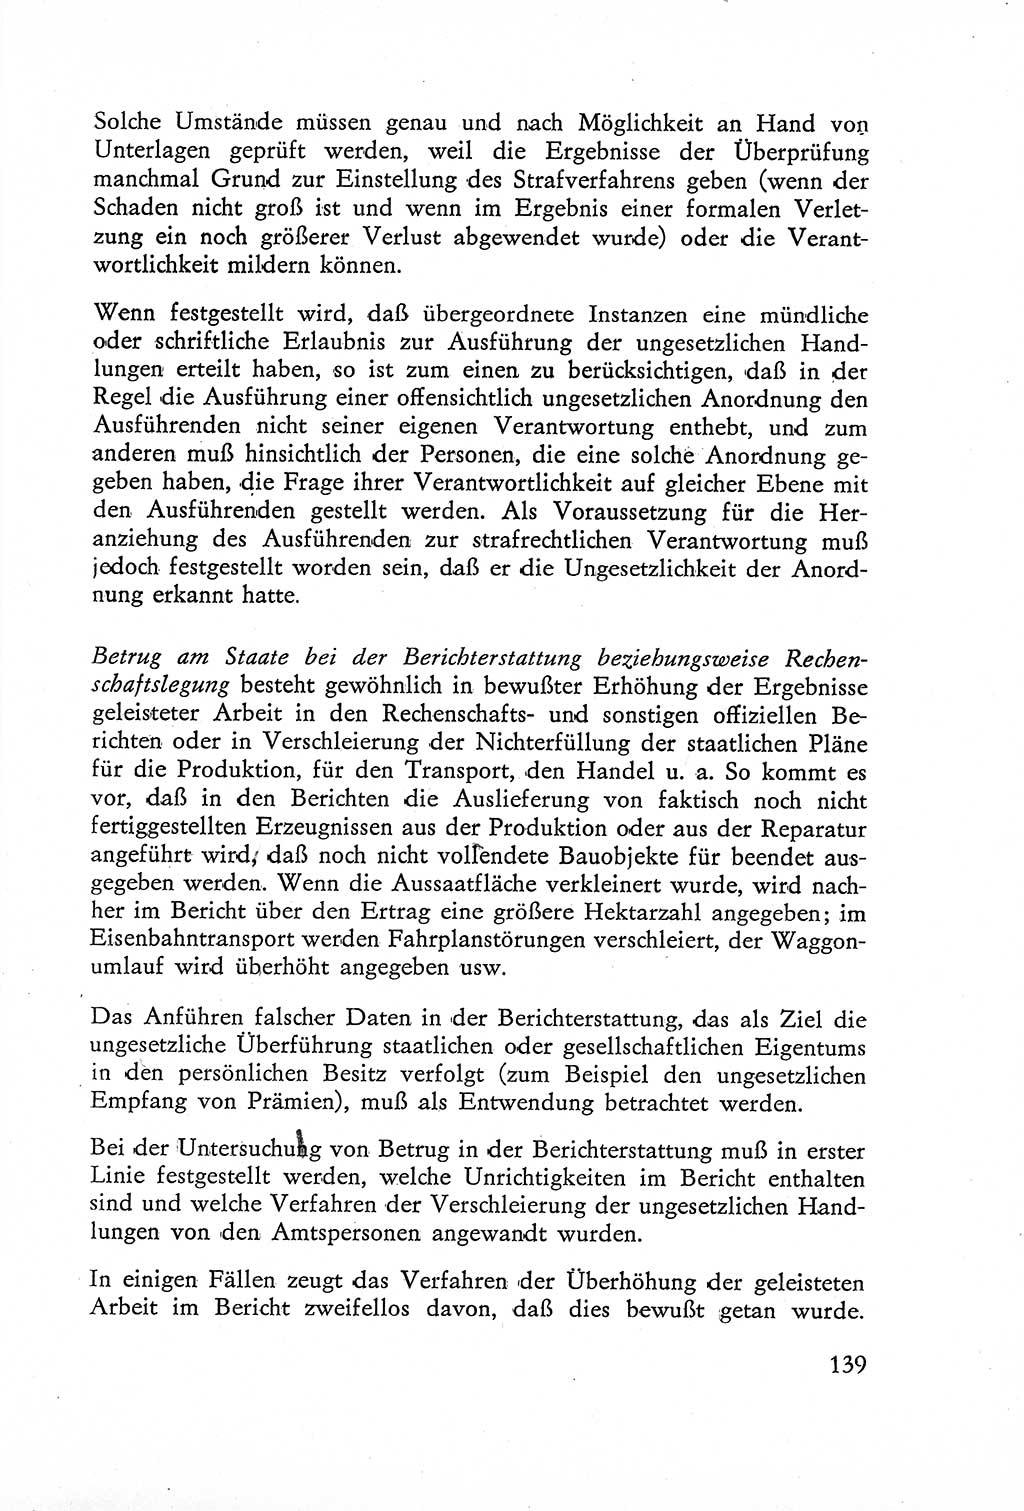 Die Untersuchung einzelner Verbrechensarten [Deutsche Demokratische Republik (DDR)] 1960, Seite 139 (Unters. Verbr.-Art. DDR 1960, S. 139)